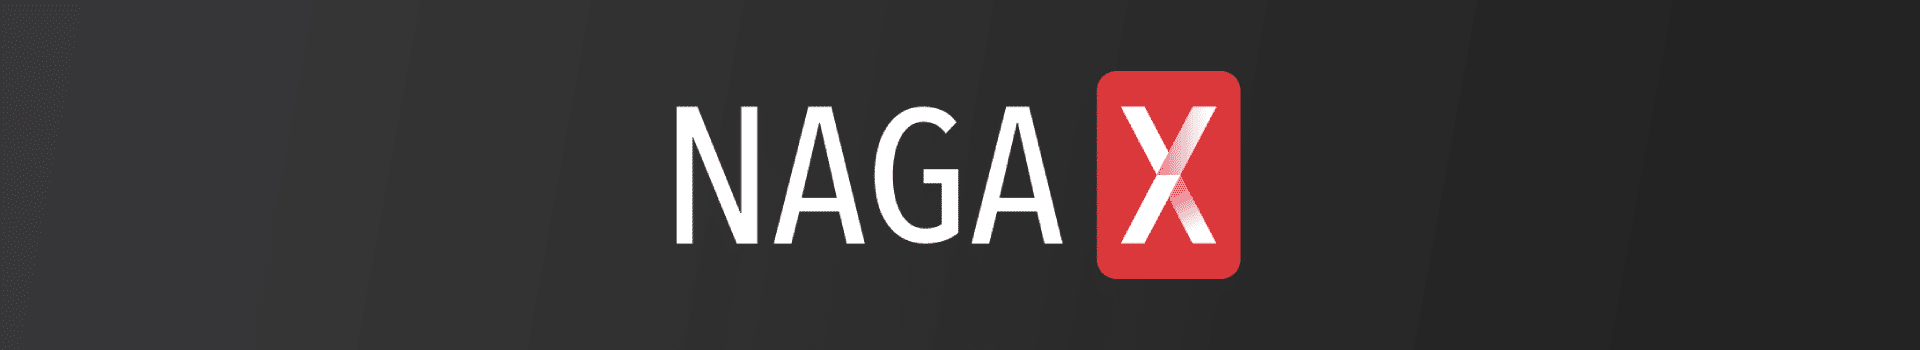 NAGAX Review